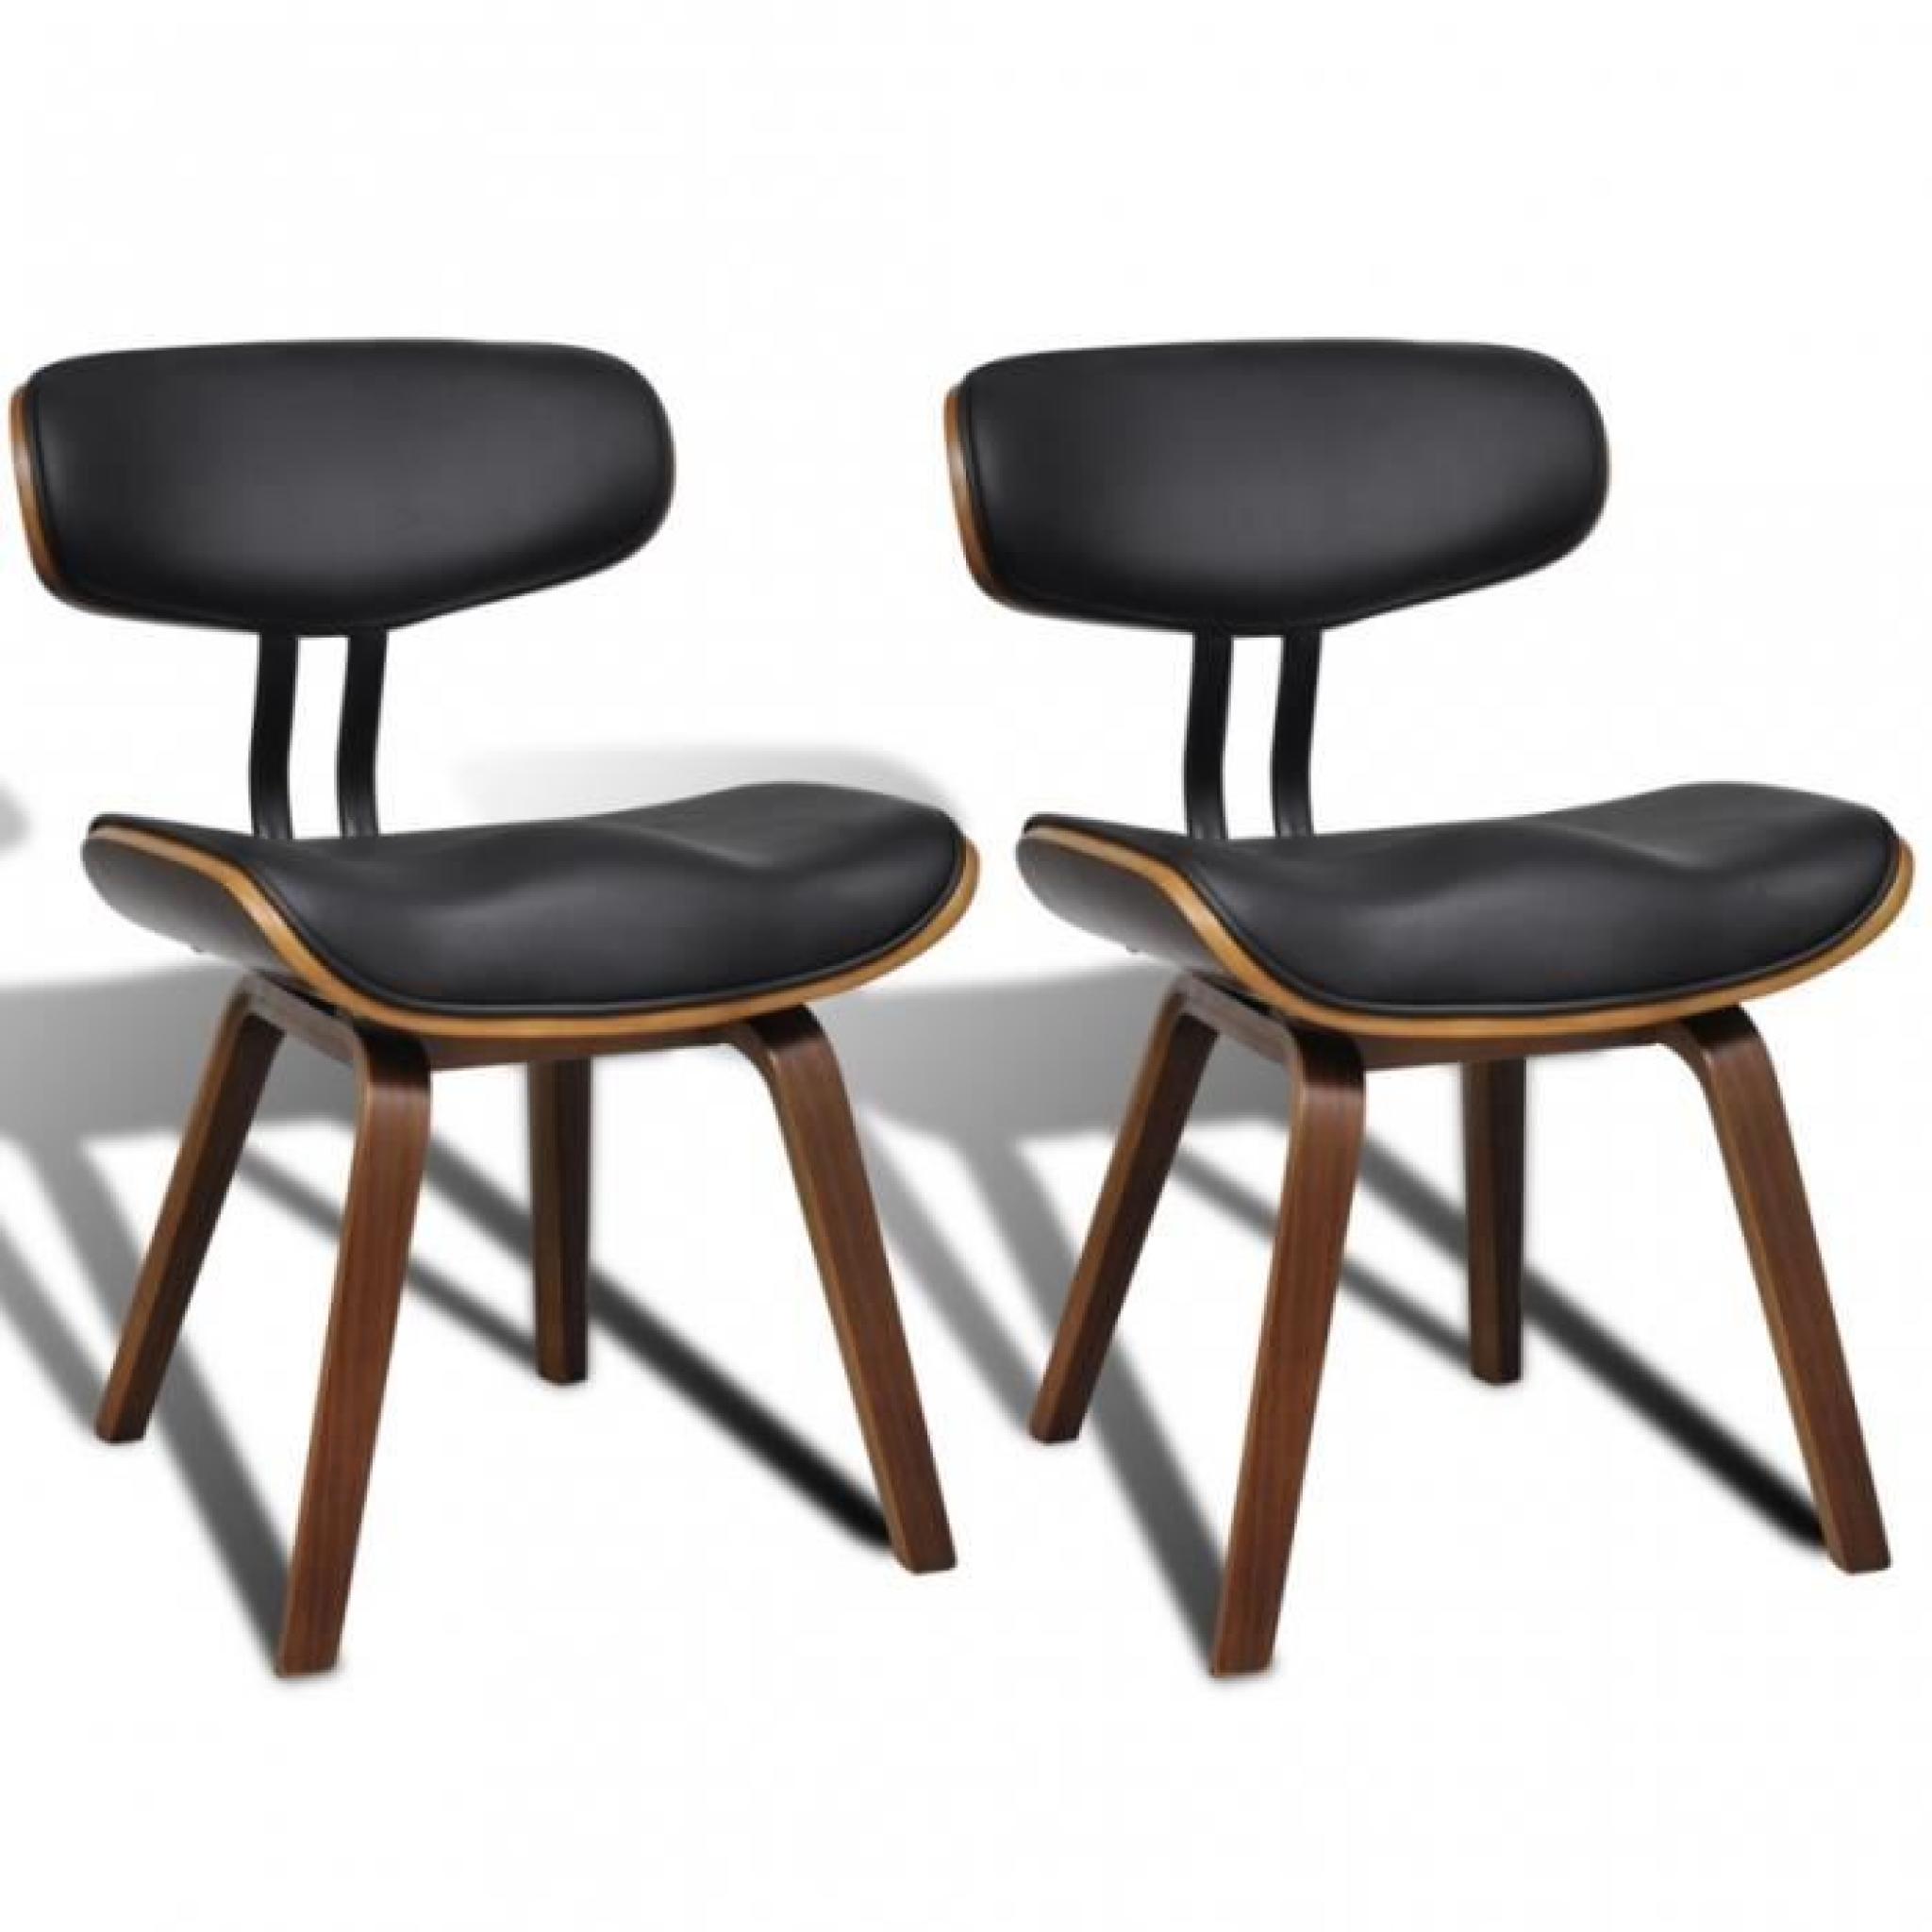 Ce set de 2 chaises de salle à manger est un point de convergence de regards. Avec son design simple et ergonomique, cette chaise...